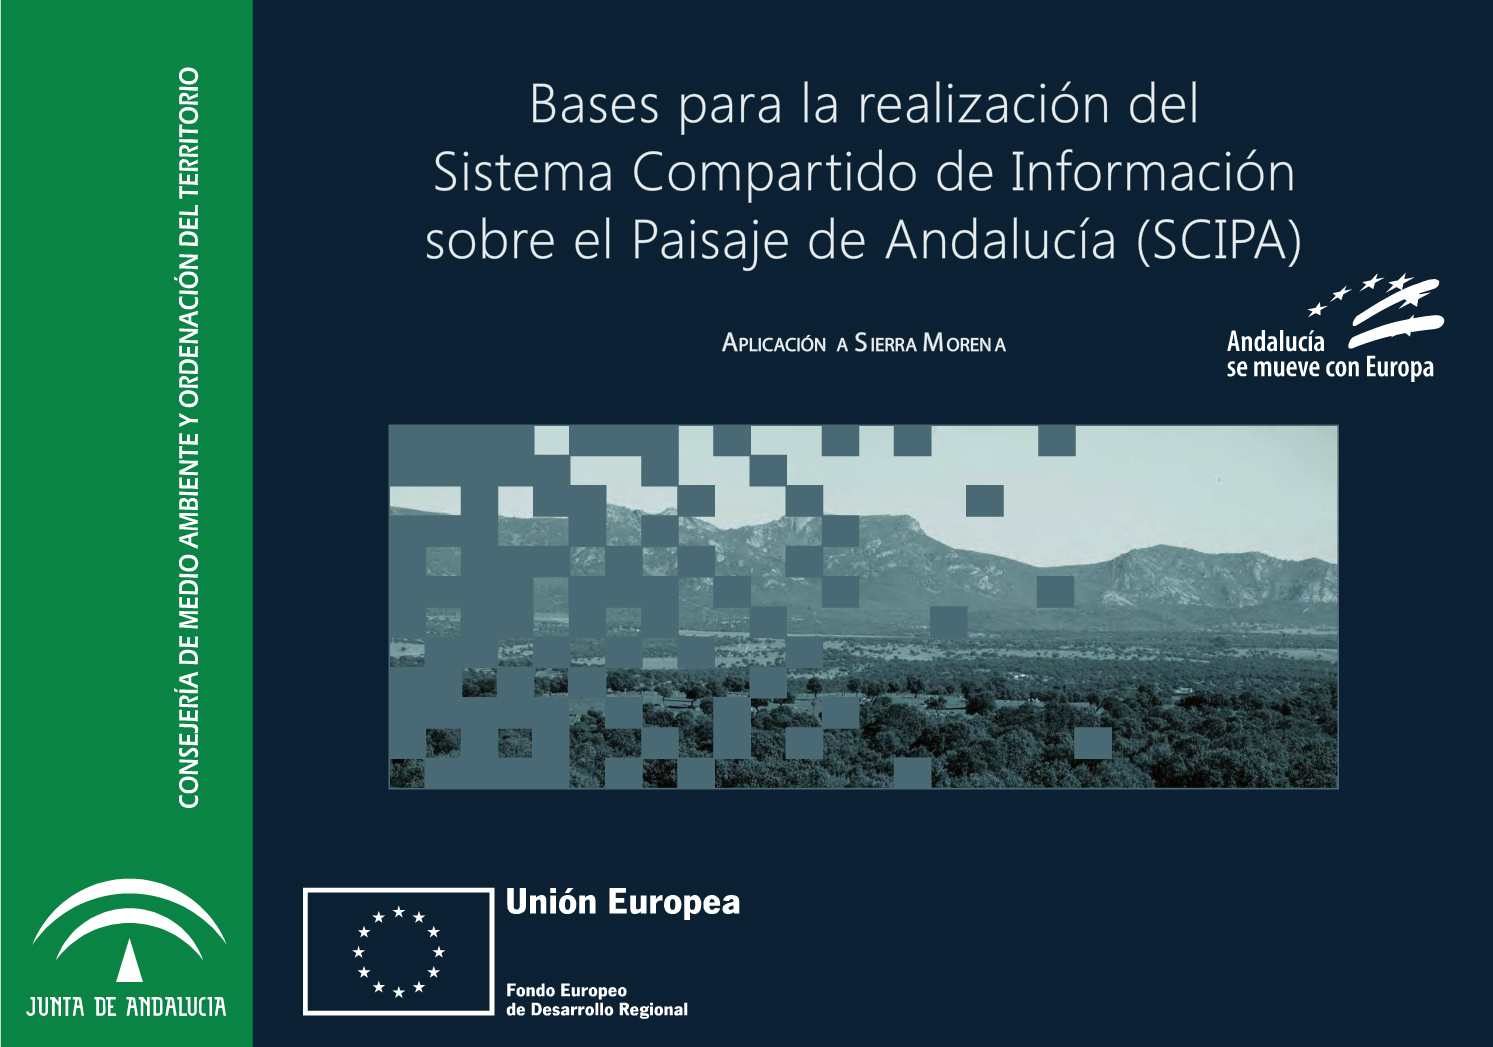 SCIPA: Inventario de paisaje de la sierra morena andaluza